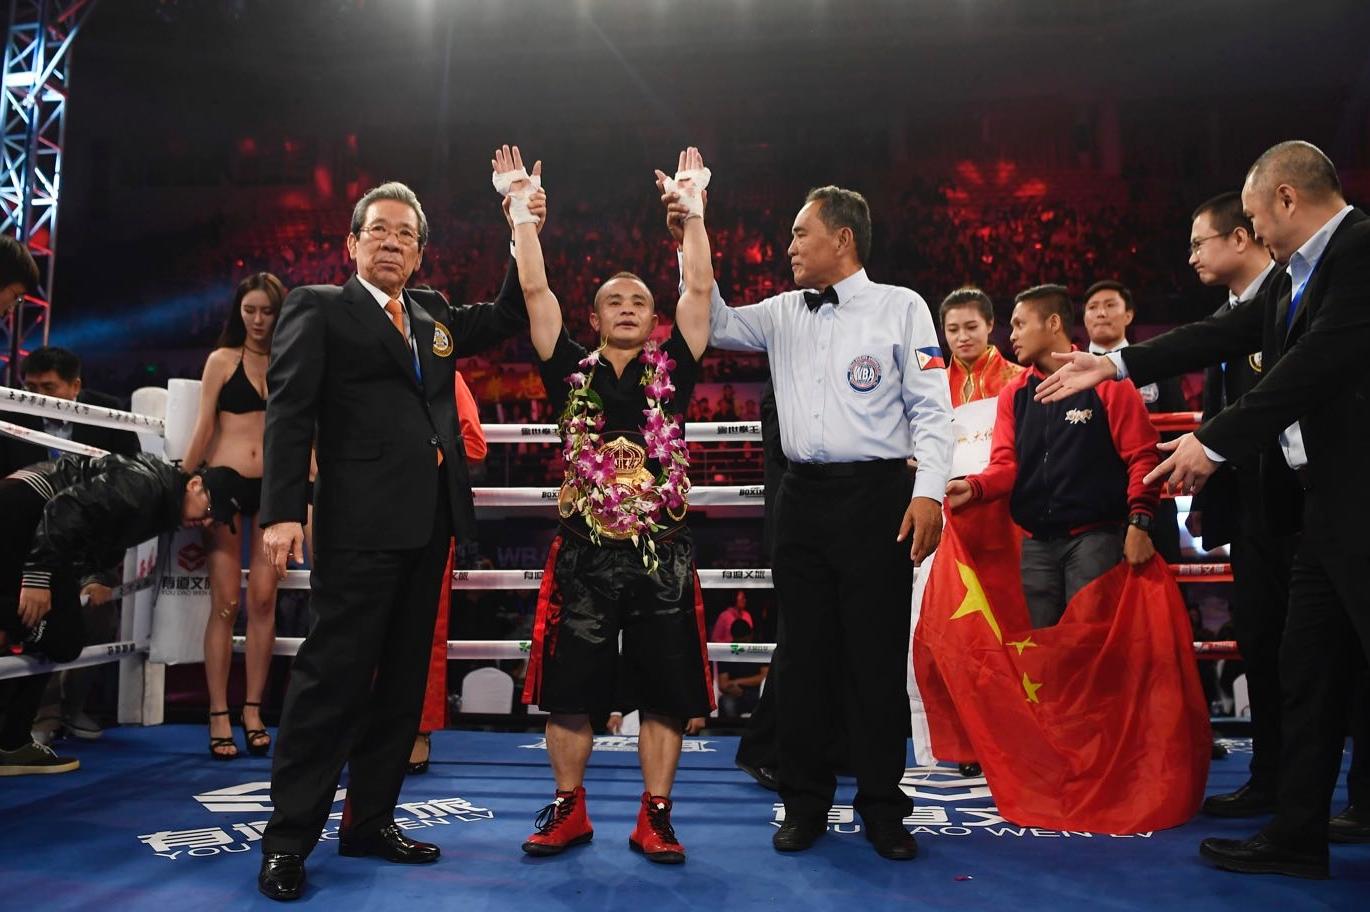 僅用42秒KO世界冠軍 張偉麗成首位中國女拳王 - 澳門力報官網